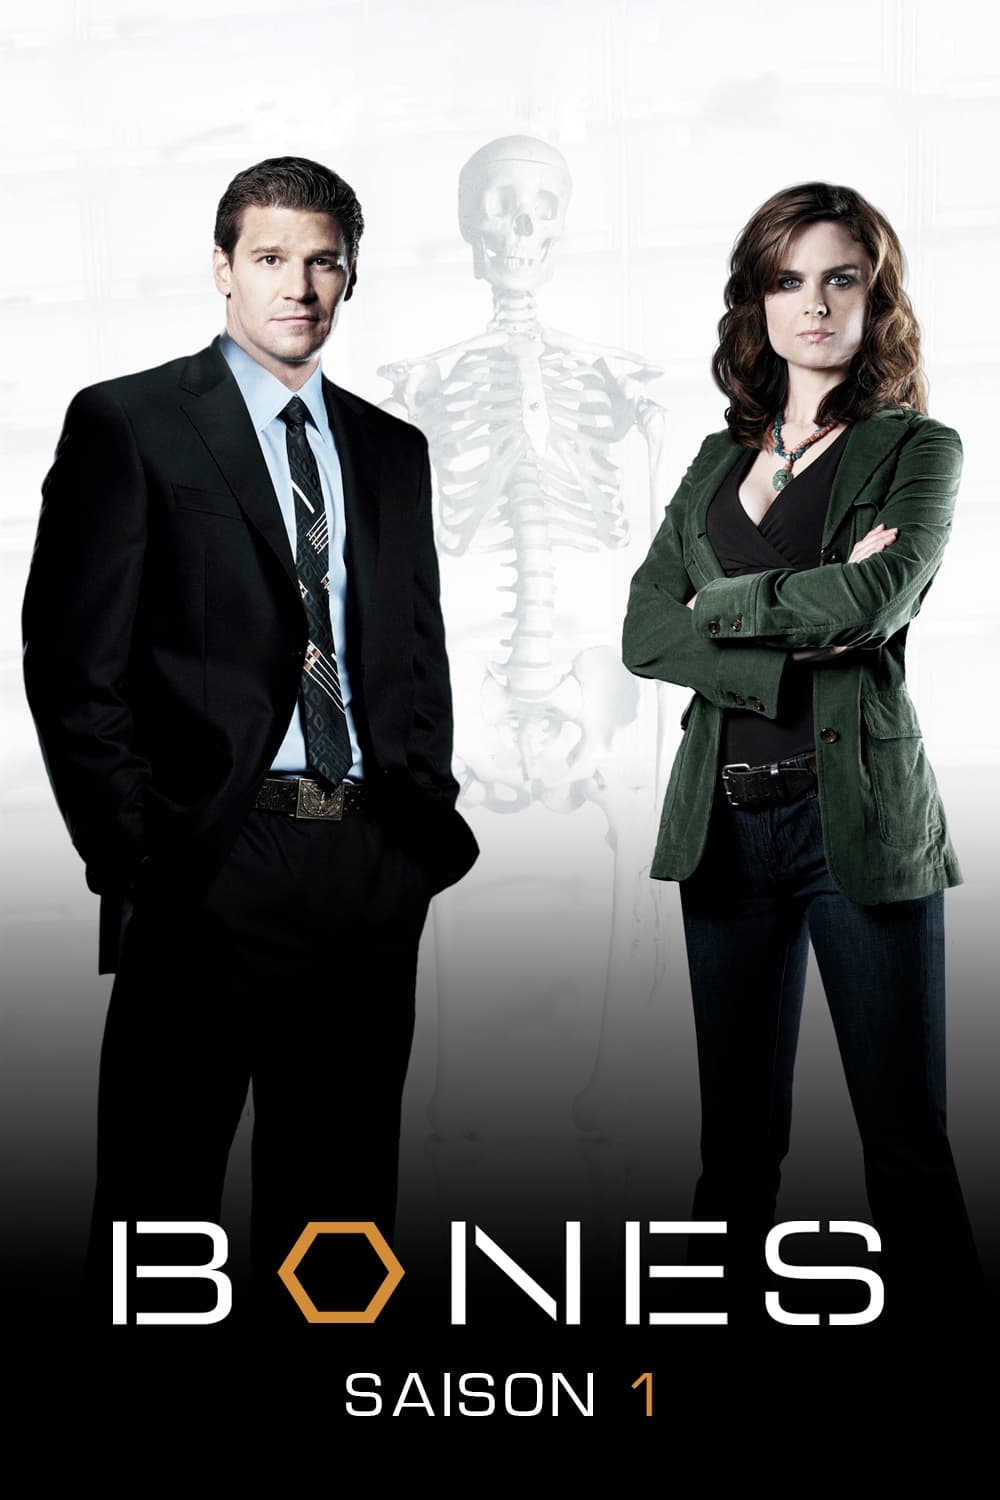 Bones Saison 1 (2005) — CinéSérie